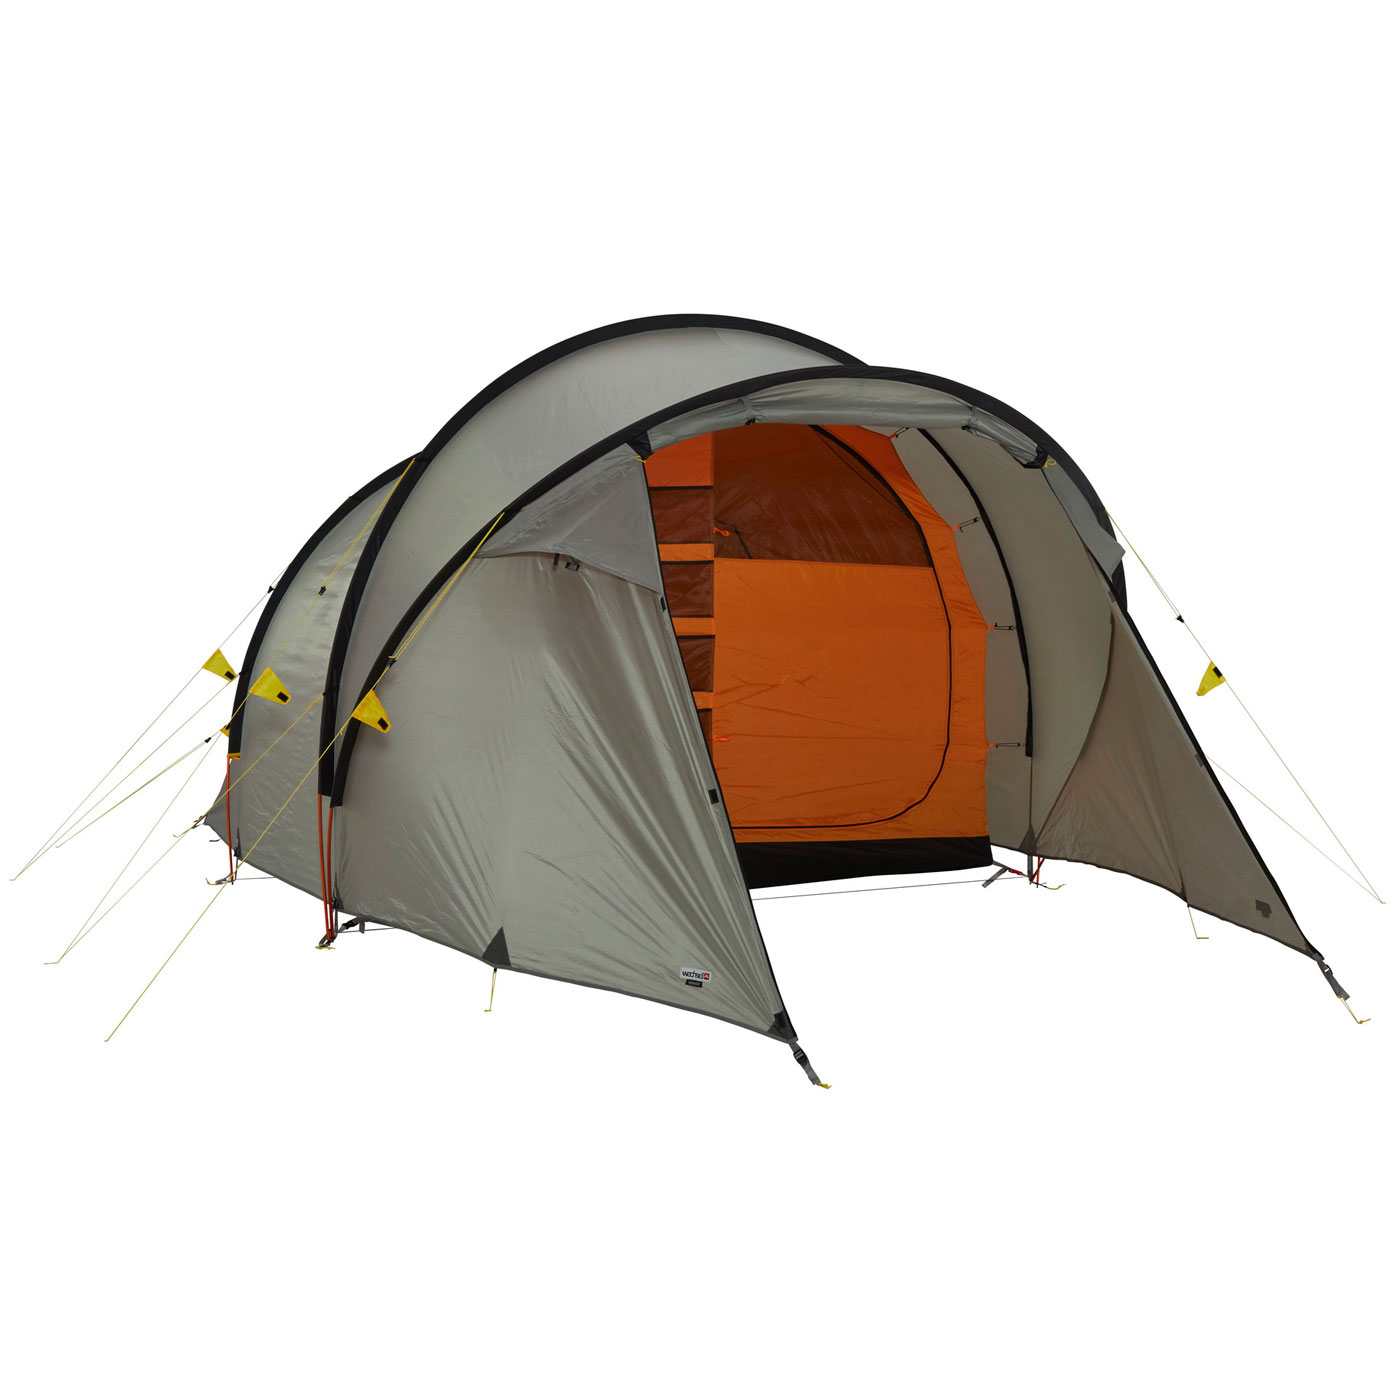 Productfoto van Wechsel Voyager Tent - Laurel Oak